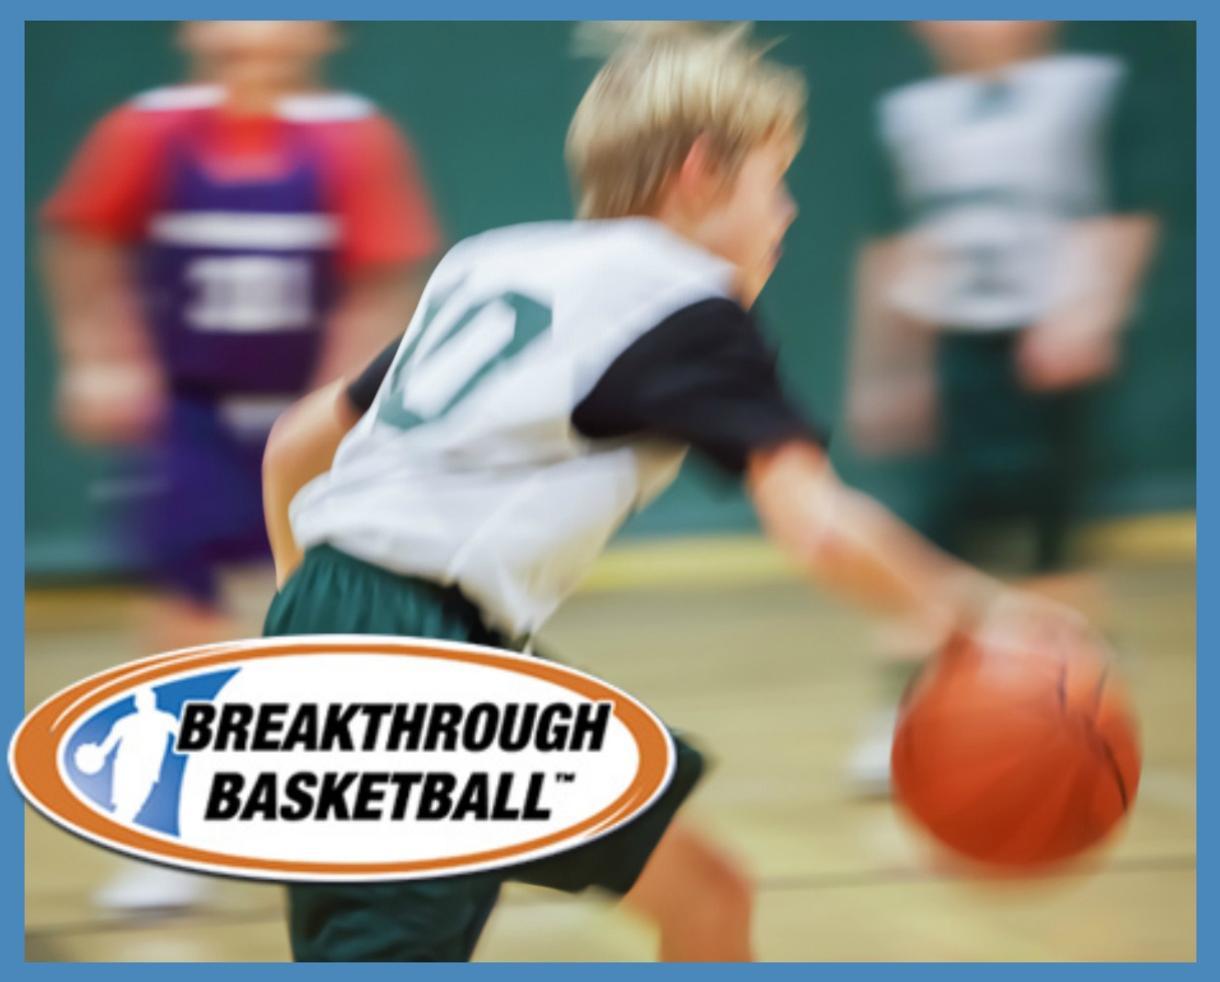 Breakthrough Basketball Logo - Deal: $156+ for Breakthrough Basketball Camp for 4th Graders ...